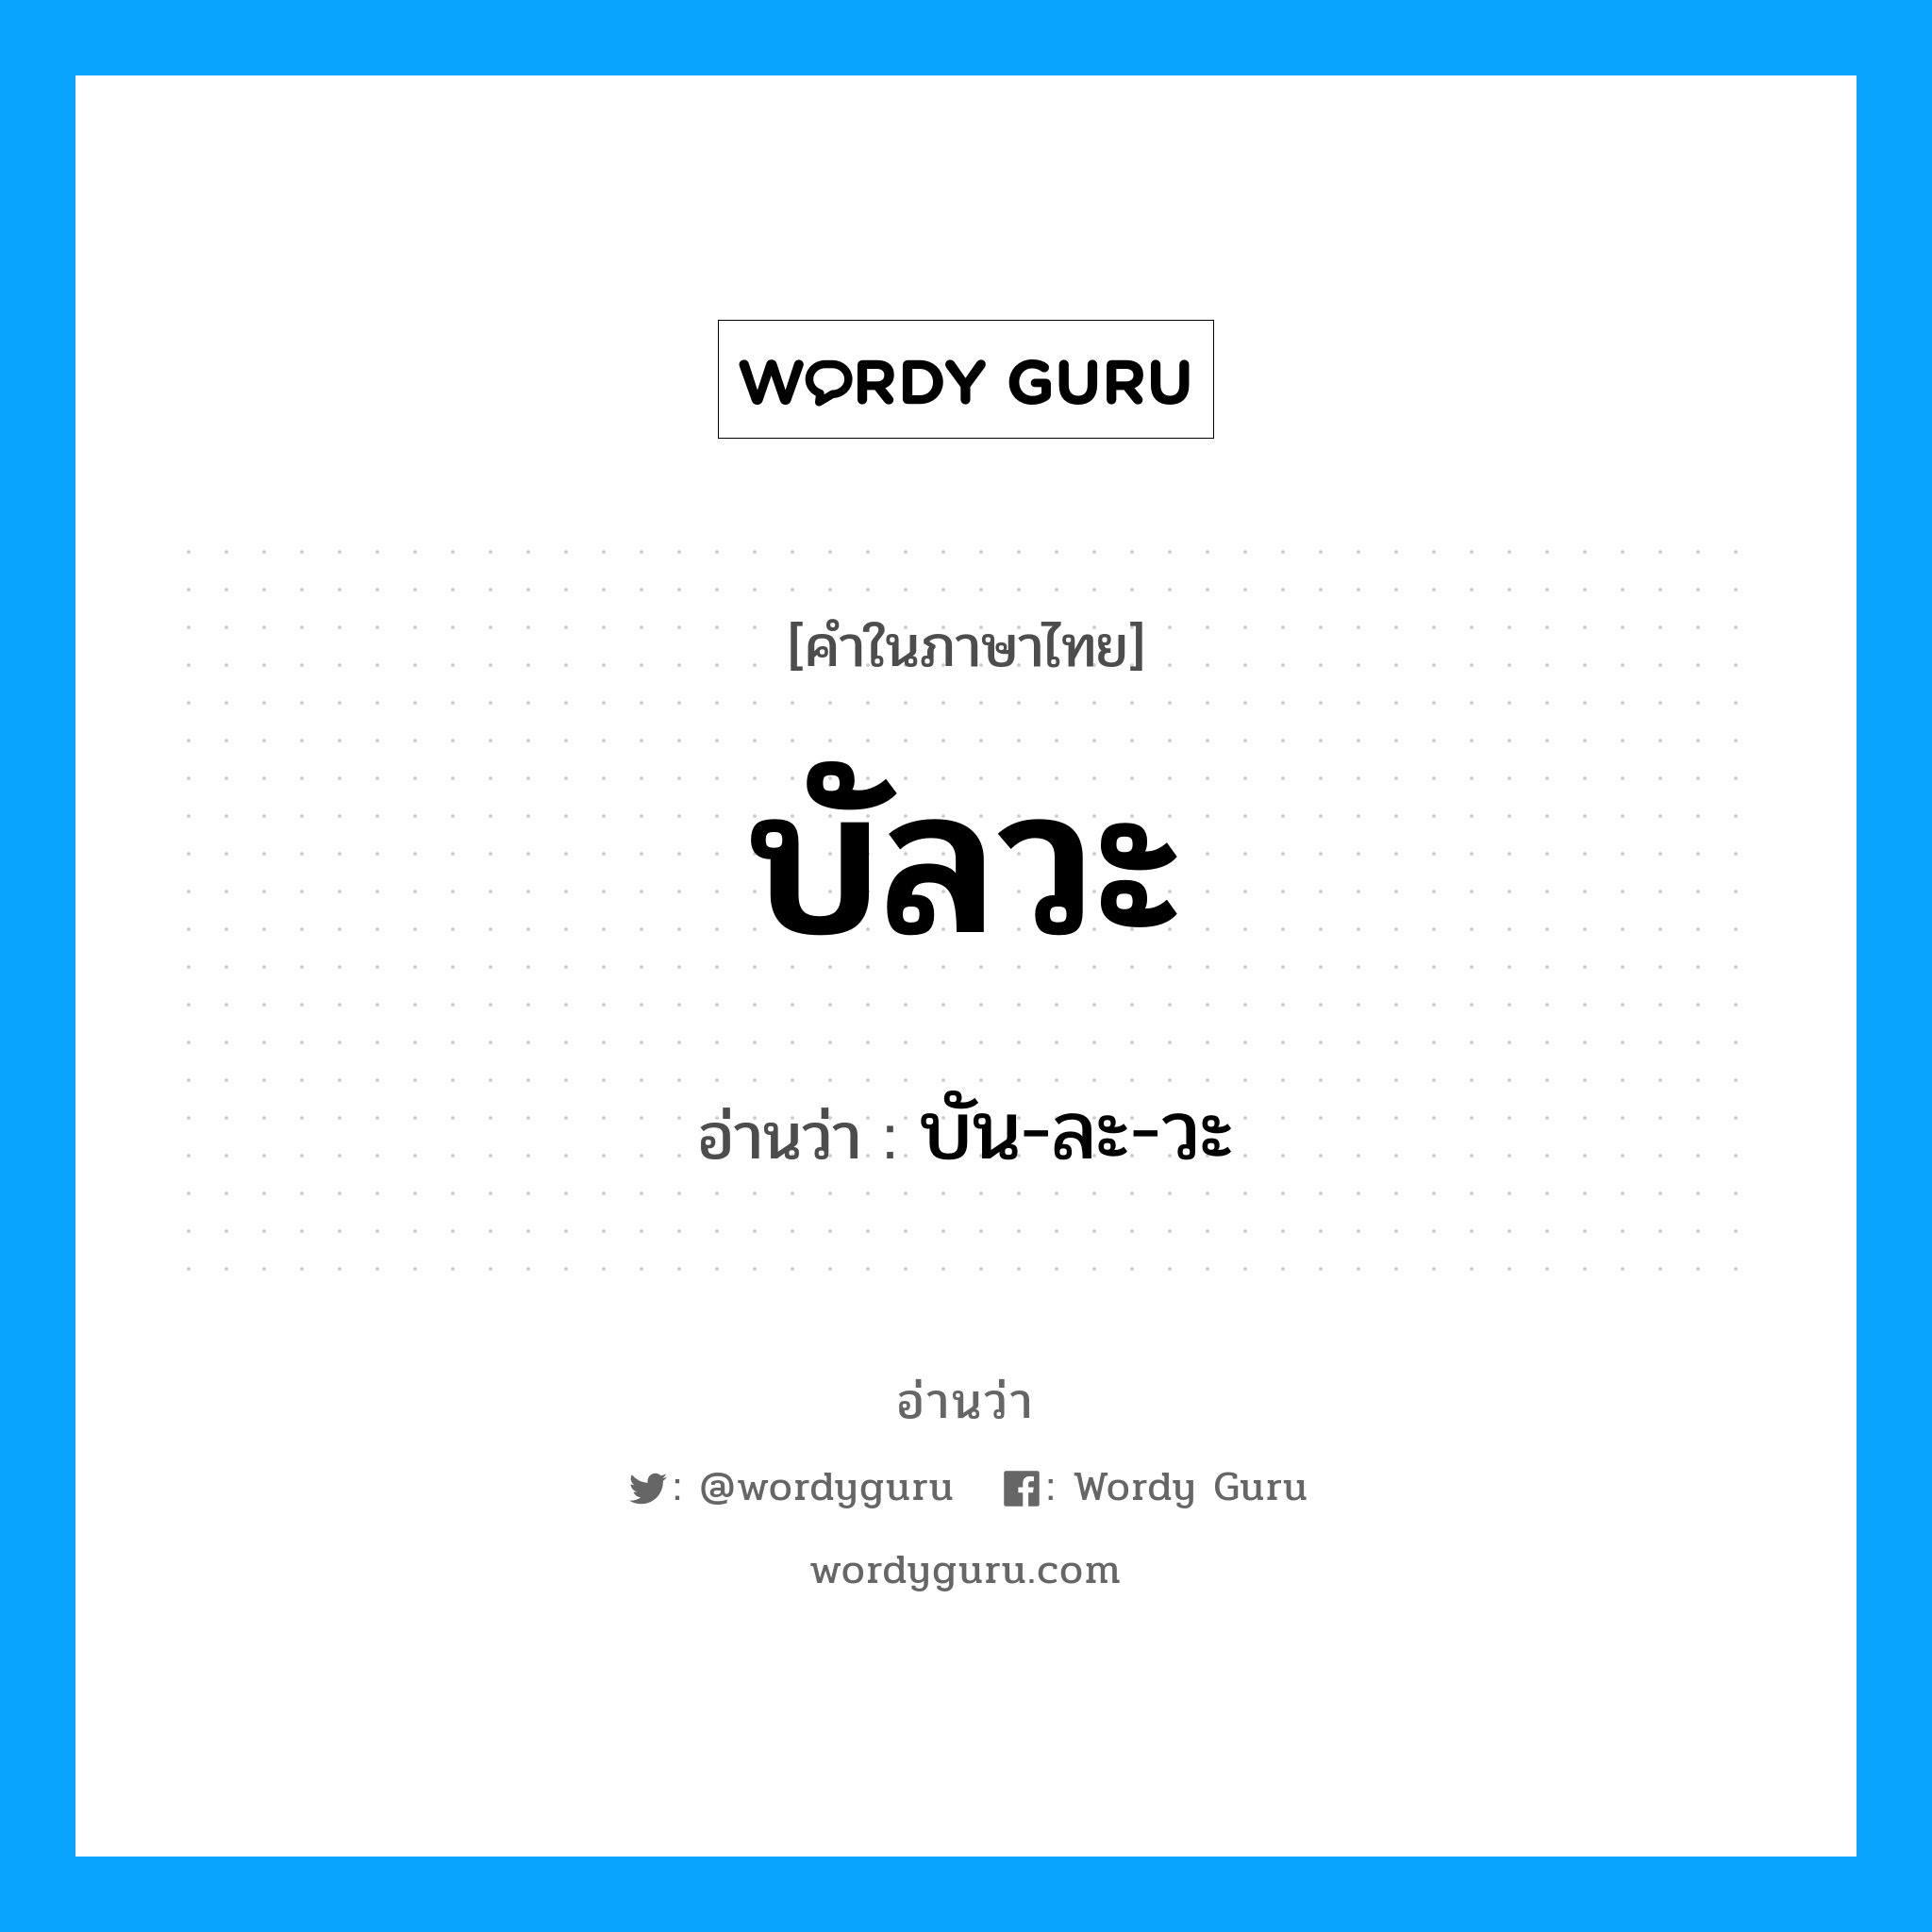 บัน-ละ-วะ เป็นคำอ่านของคำไหน?, คำในภาษาไทย บัน-ละ-วะ อ่านว่า บัลวะ